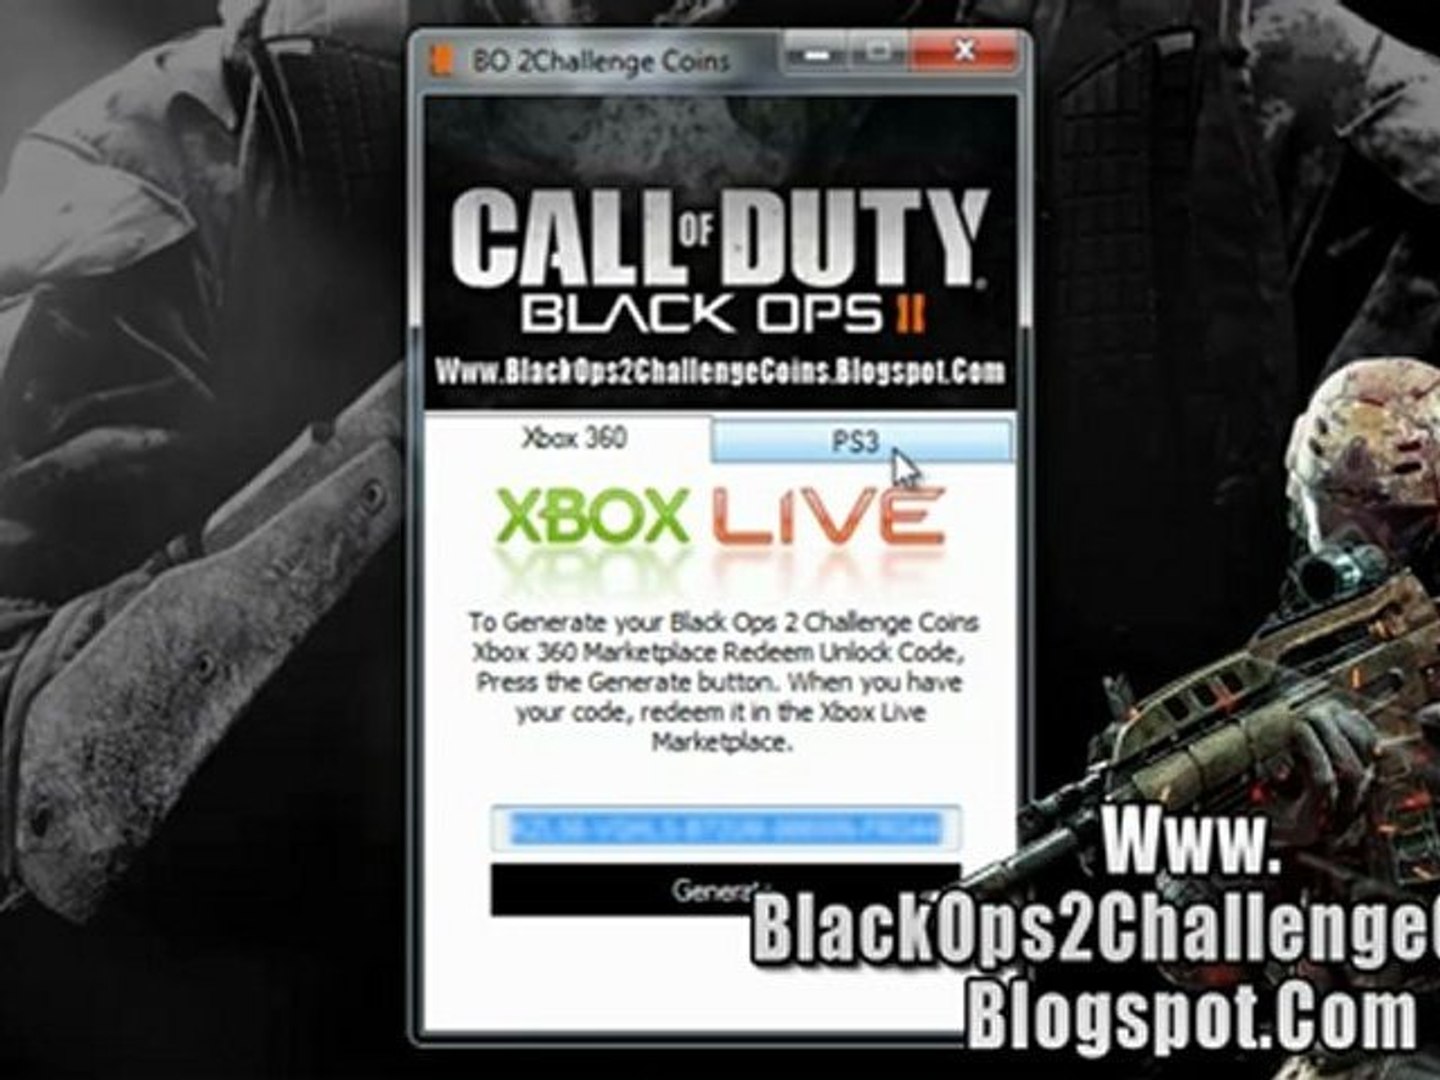 speelplaats Typisch Verkeersopstopping Get Free Black Ops 2 Challenge Coins Redeem Code - Xbox 360 - PS3 - video  Dailymotion